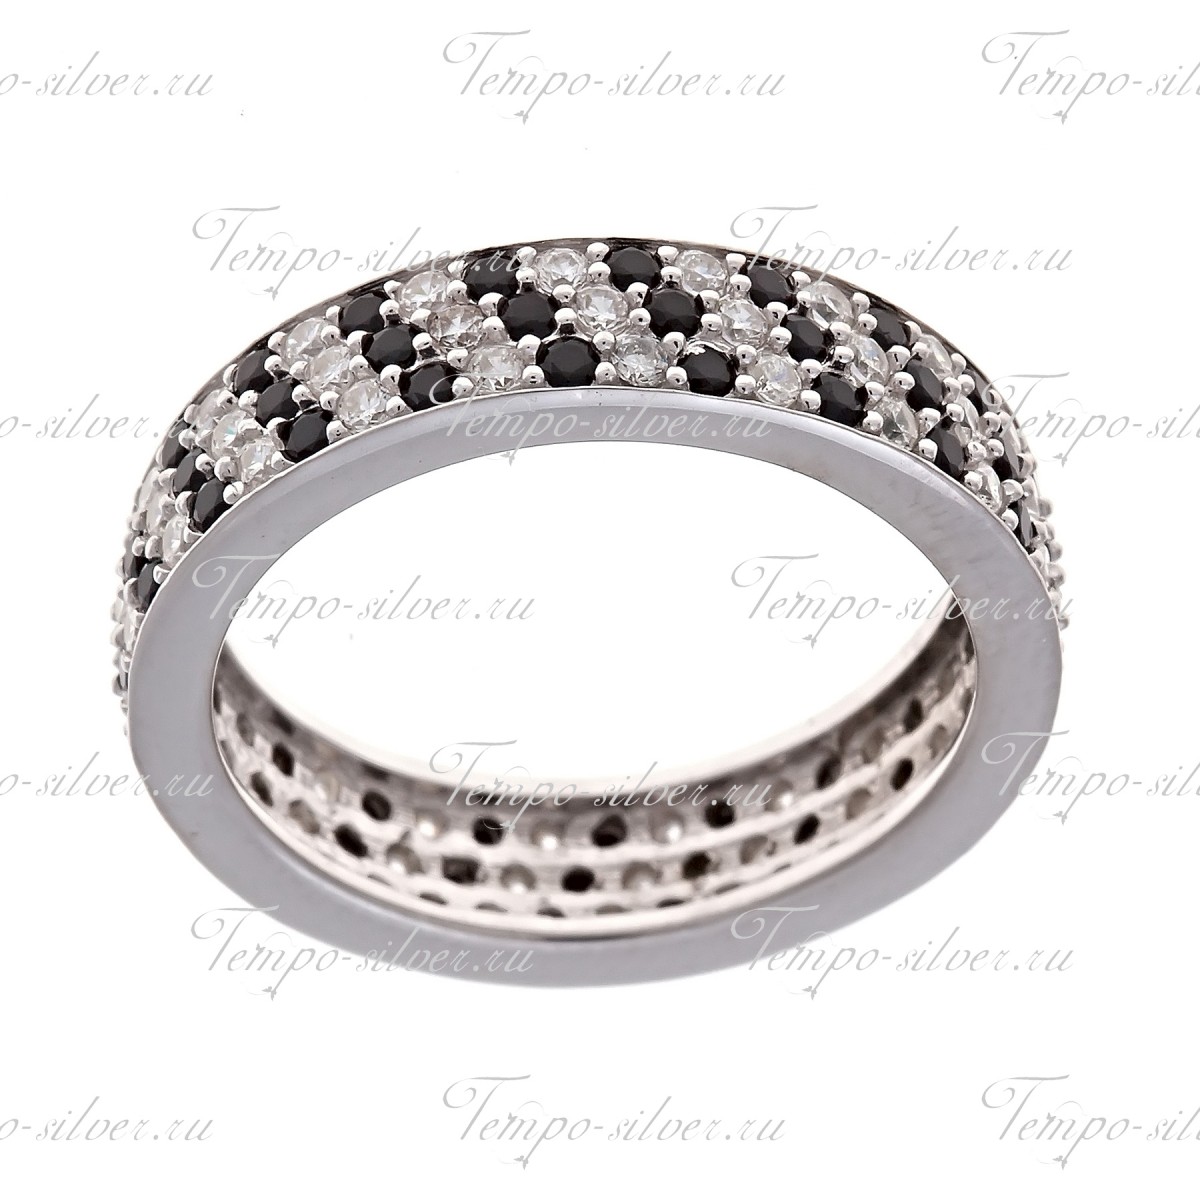 Кольцо из серебра обручального типа с чередующимися черно-белыми камнями